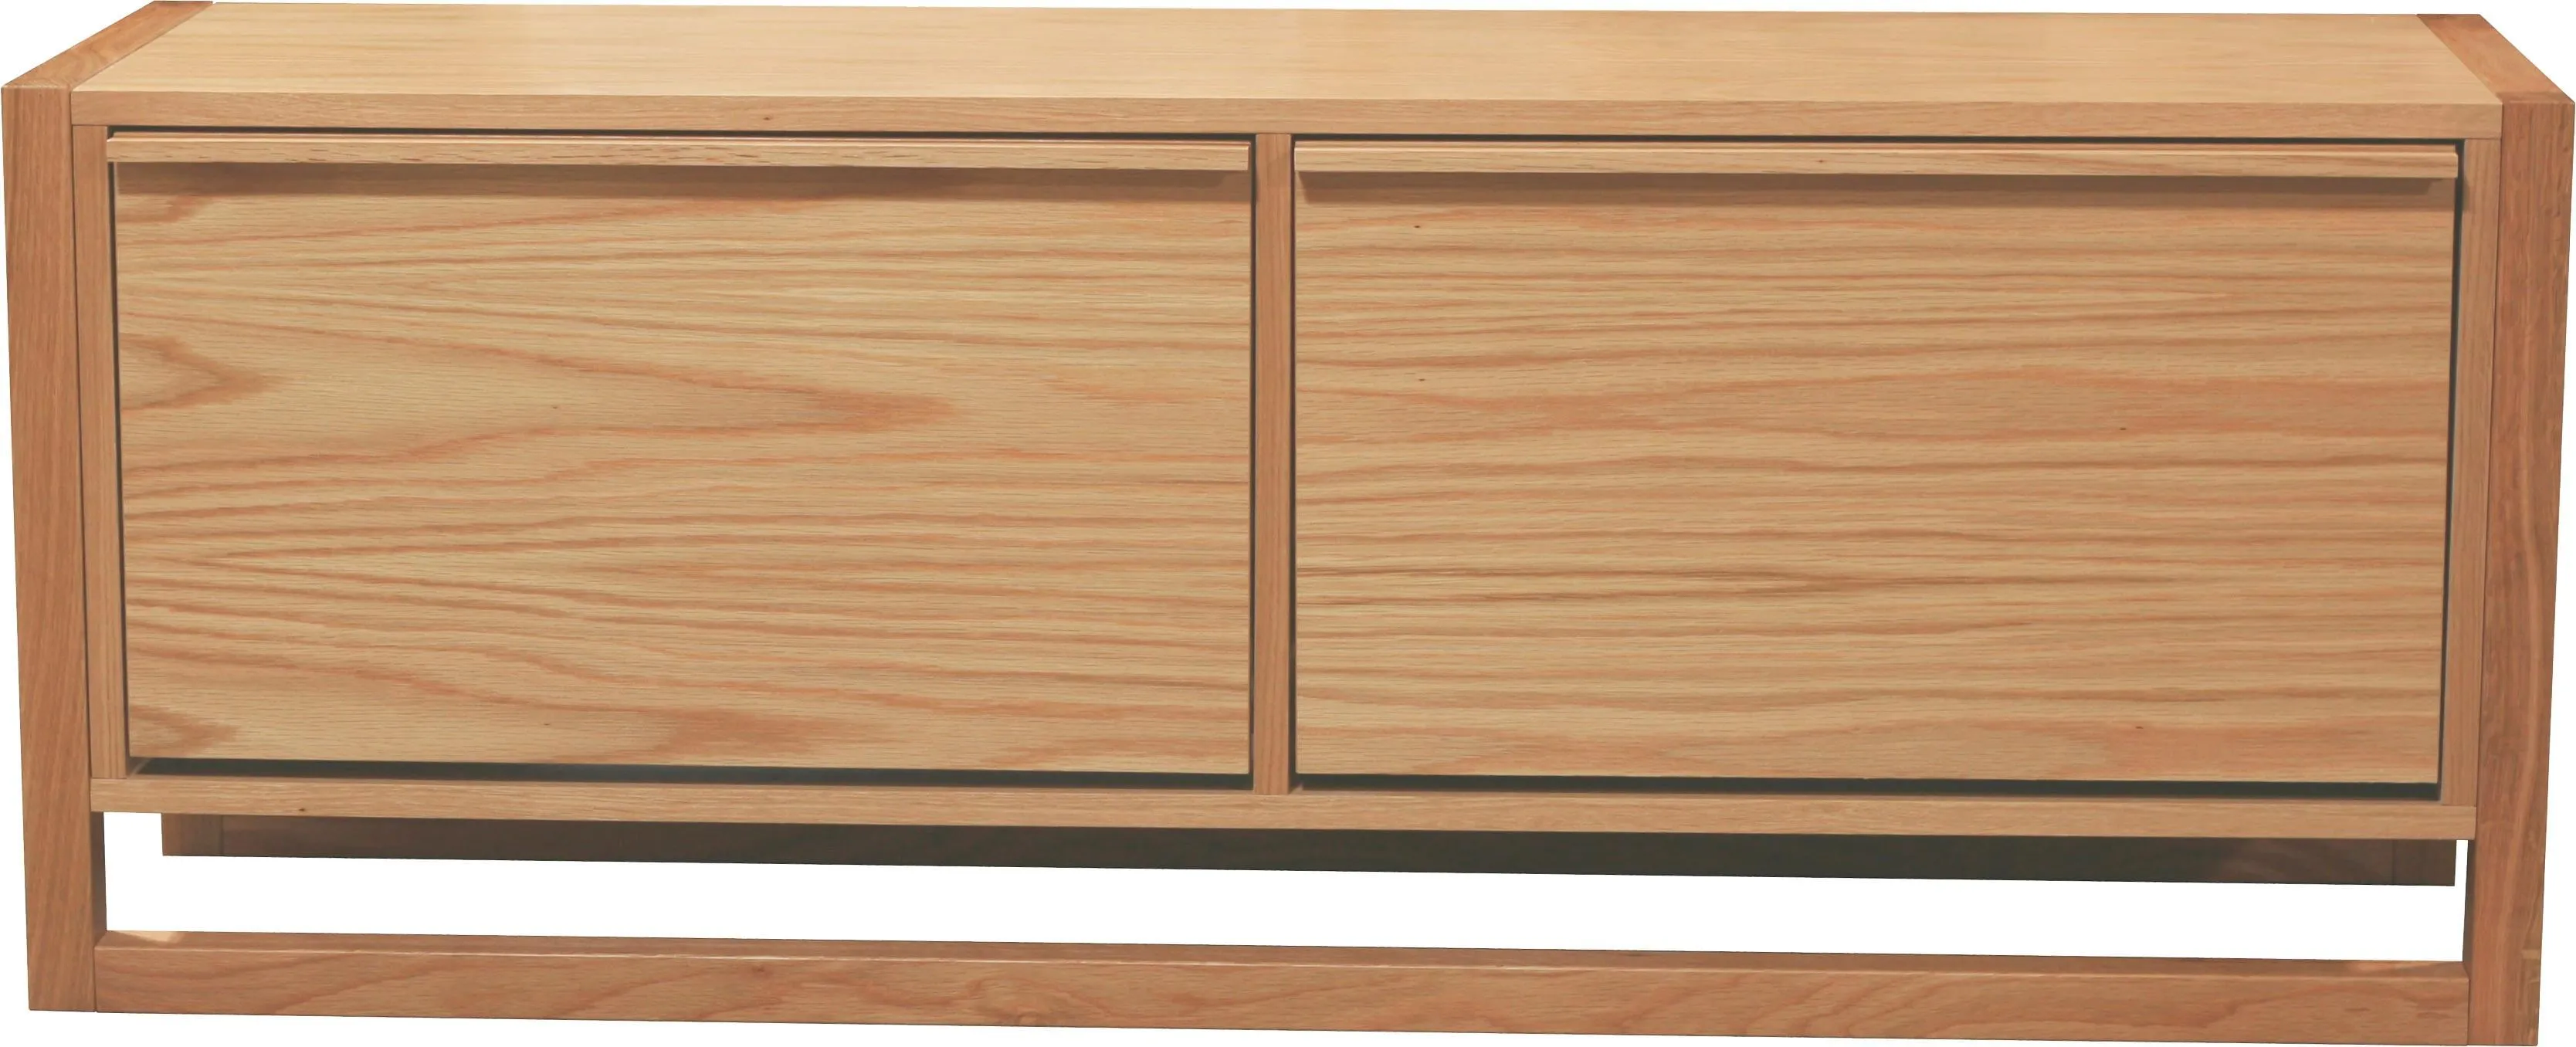 Woodman Sitzbank »NewEst«, im skandinavian Design, Holzfurnier aus Eiche Woodman eichefarben